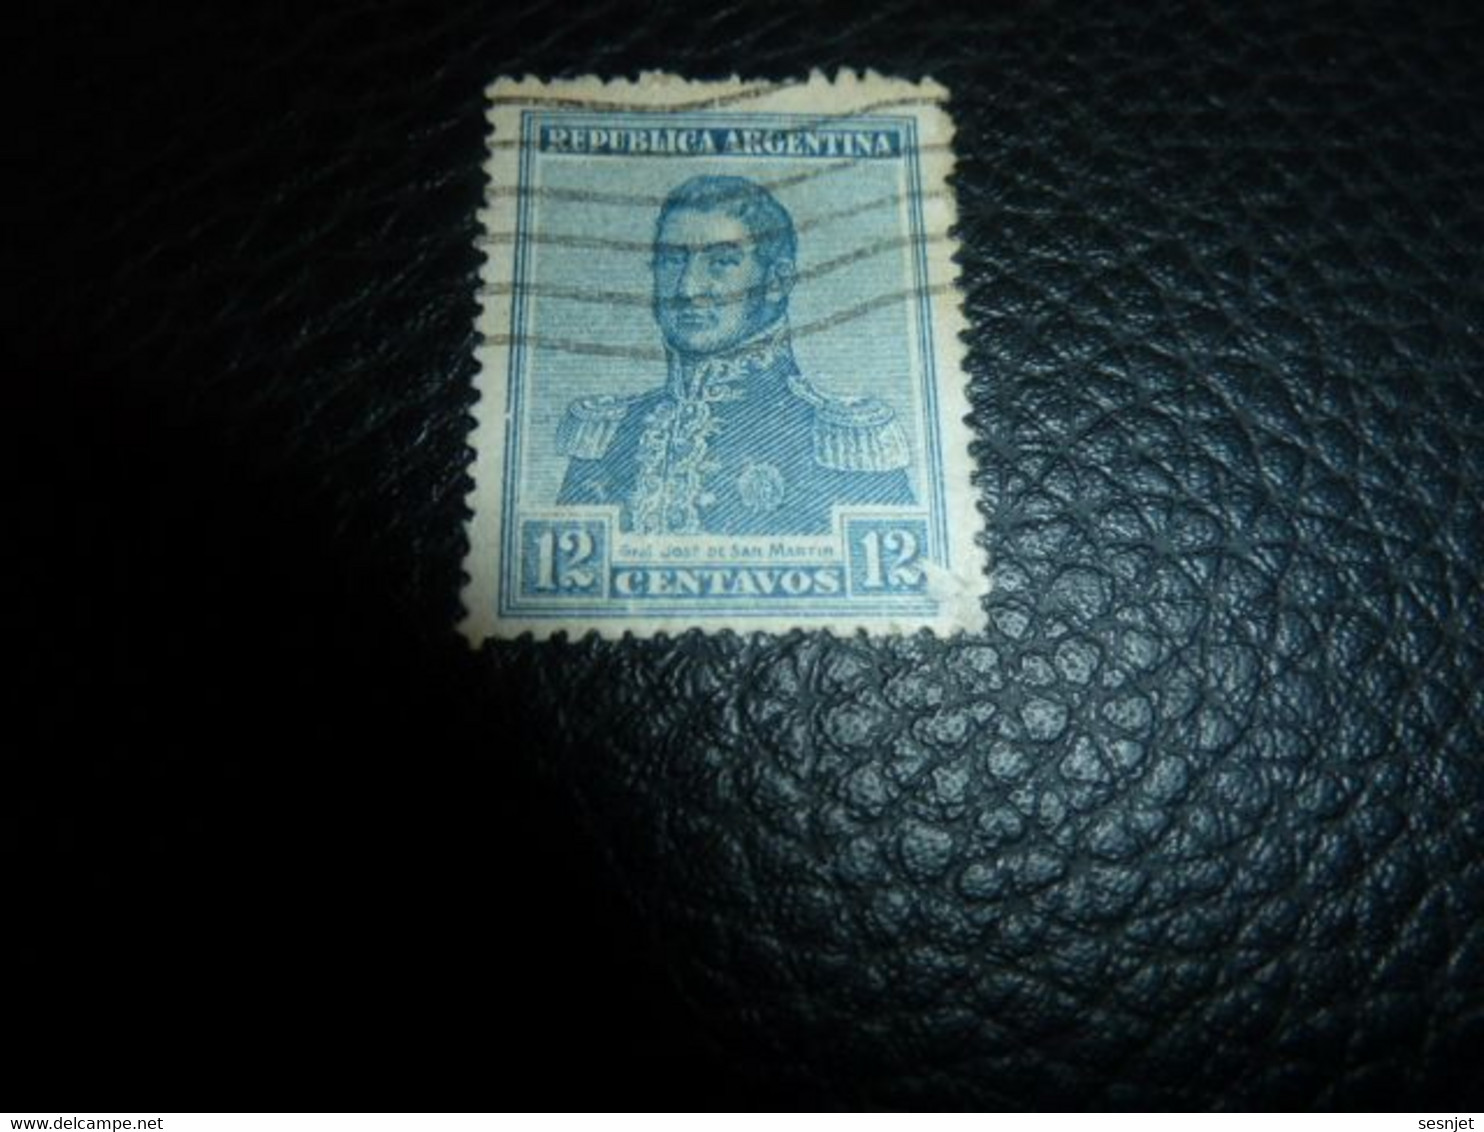 Republica Argentina - Général José De San Martin - 12 Centavos - Yt 141 - Bleu - Oblitéré - Année 1908 - - Used Stamps